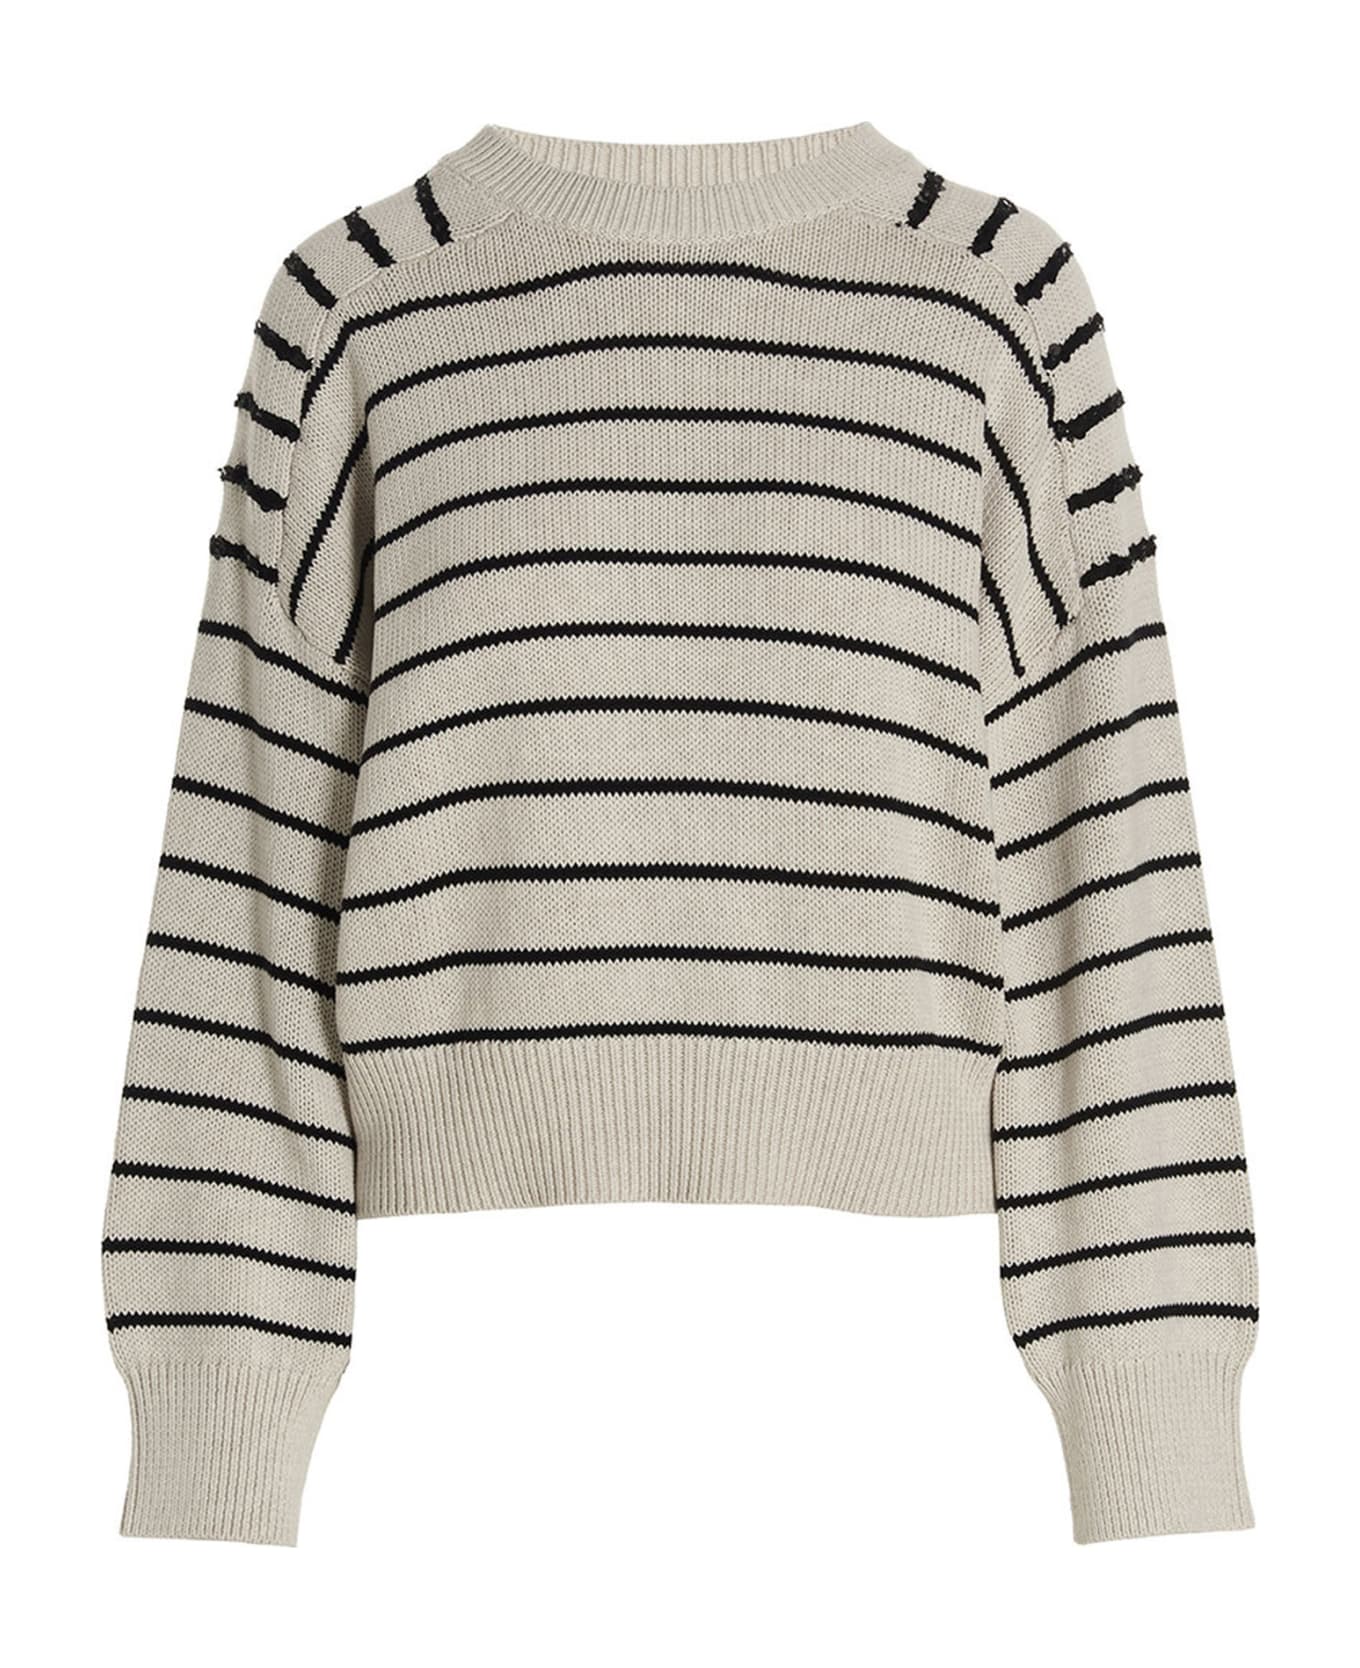 Brunello Cucinelli Striped Sweater - White/Black